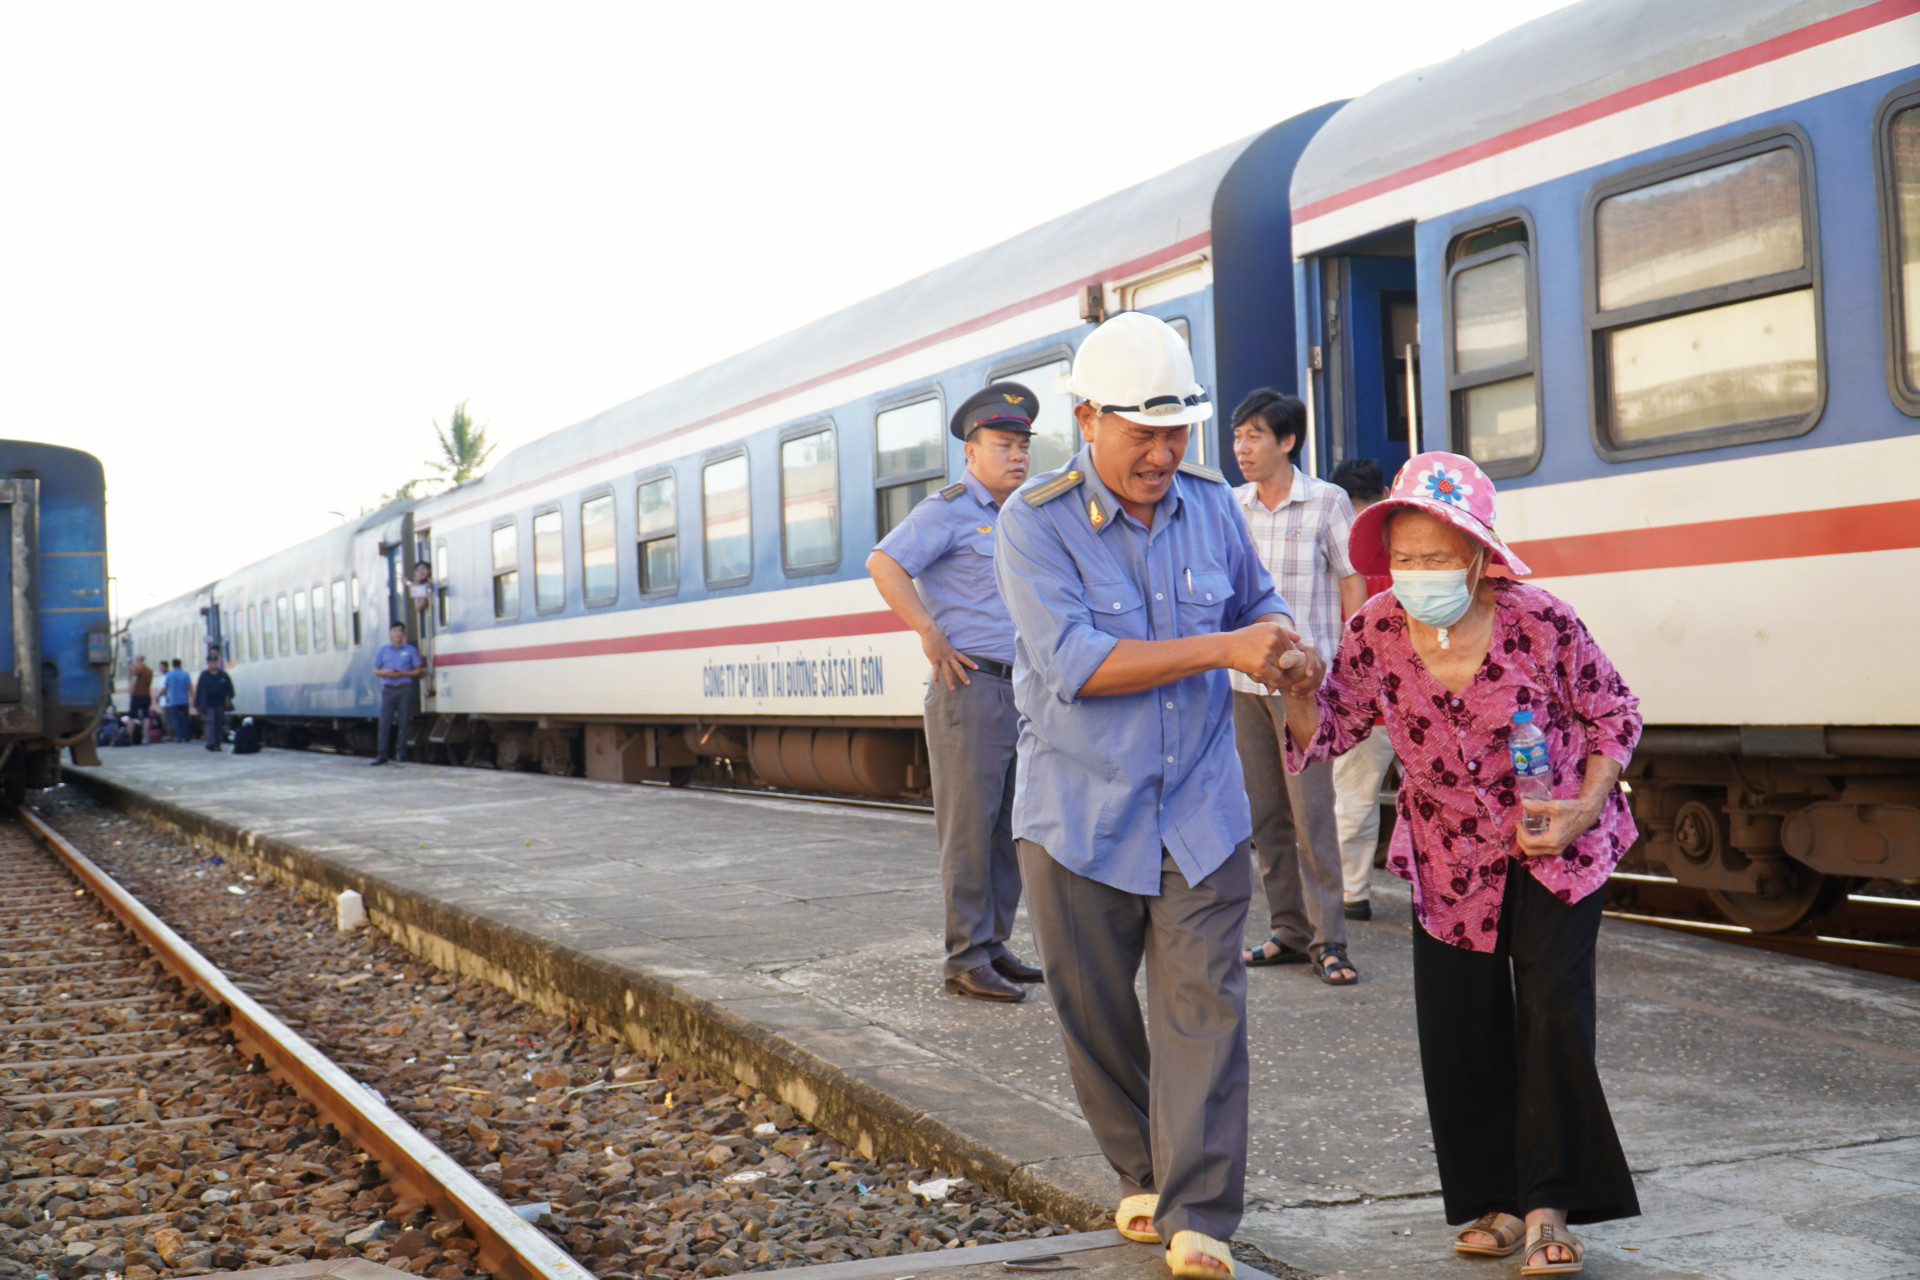 Cán bộ ngành Đường sắt hỗ trợ một người cao tuổi xuống tàu, lên xe để trung chuyển